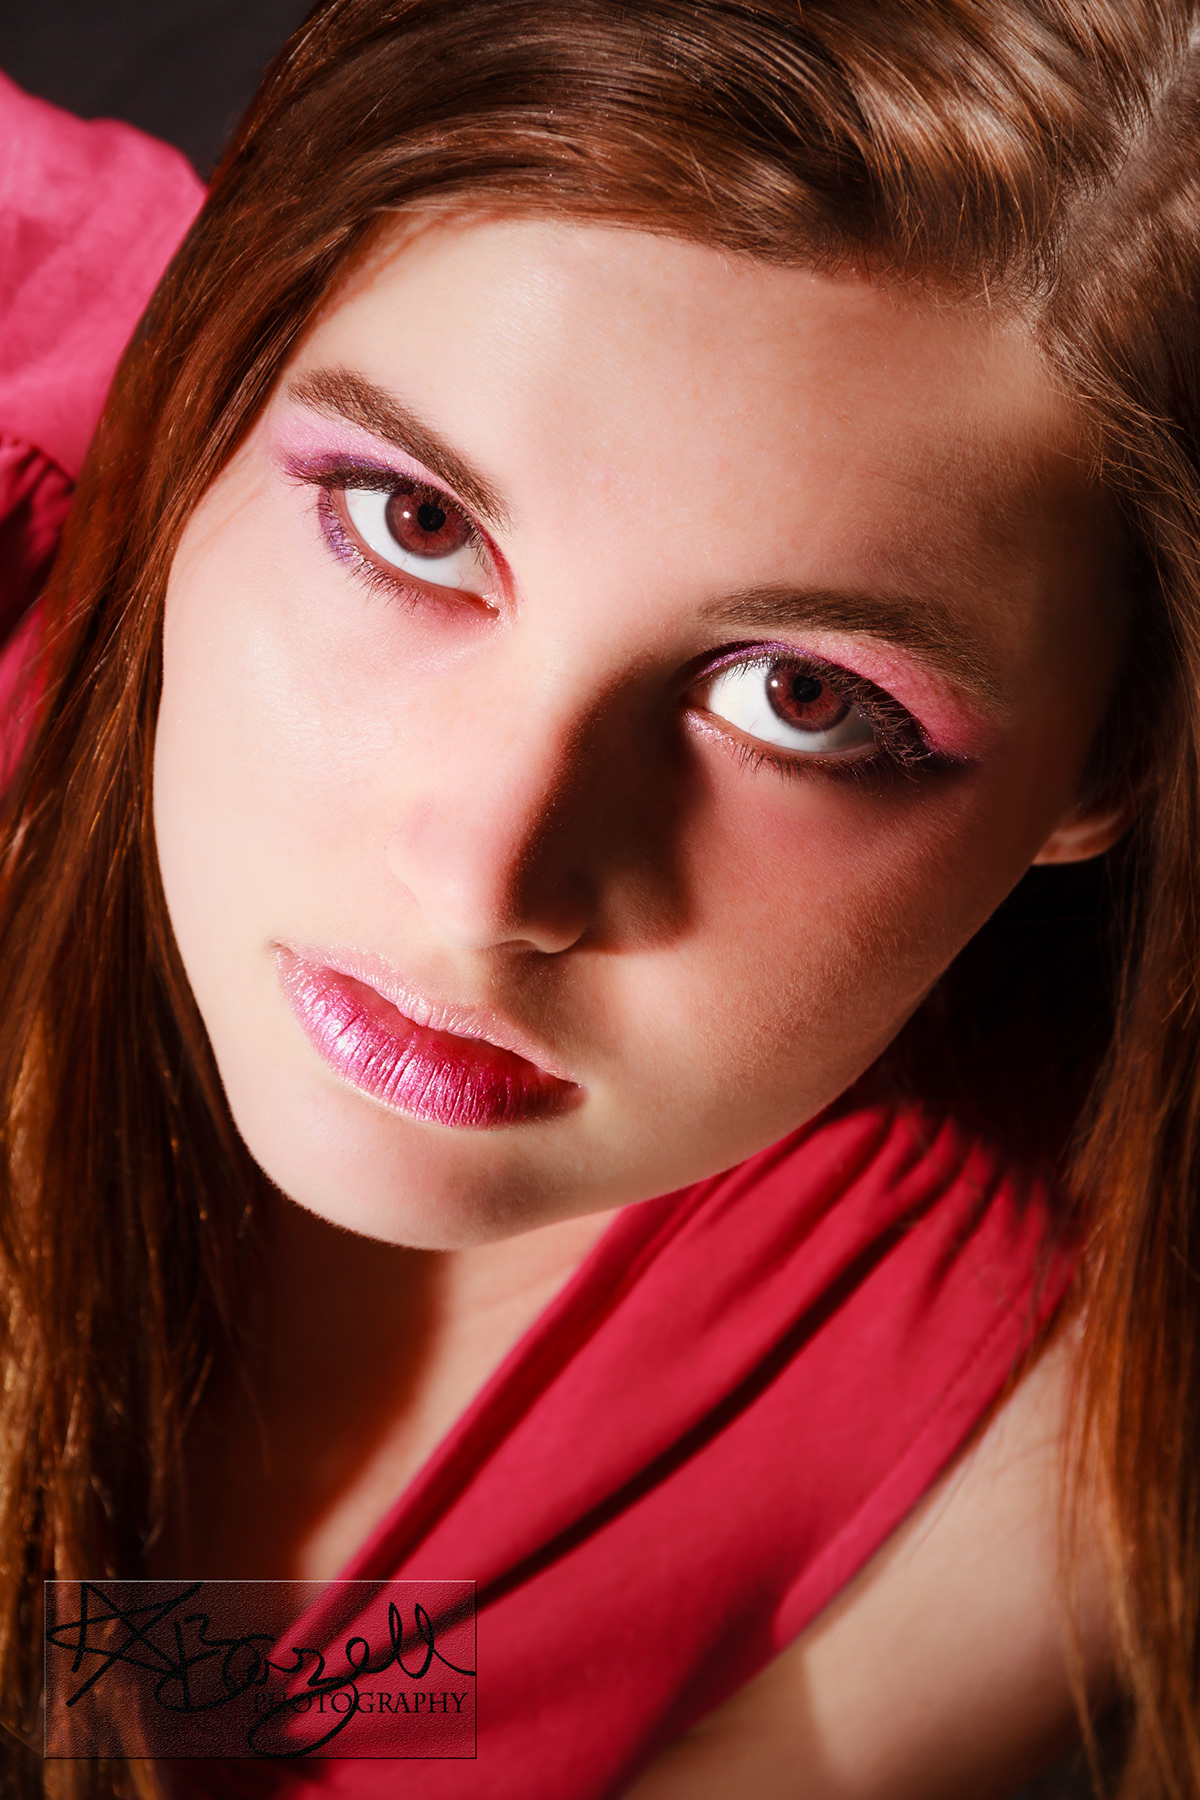 Studio Photography digital makeup portrait photography photoshop Adobe Bridge displacement Canon 7D